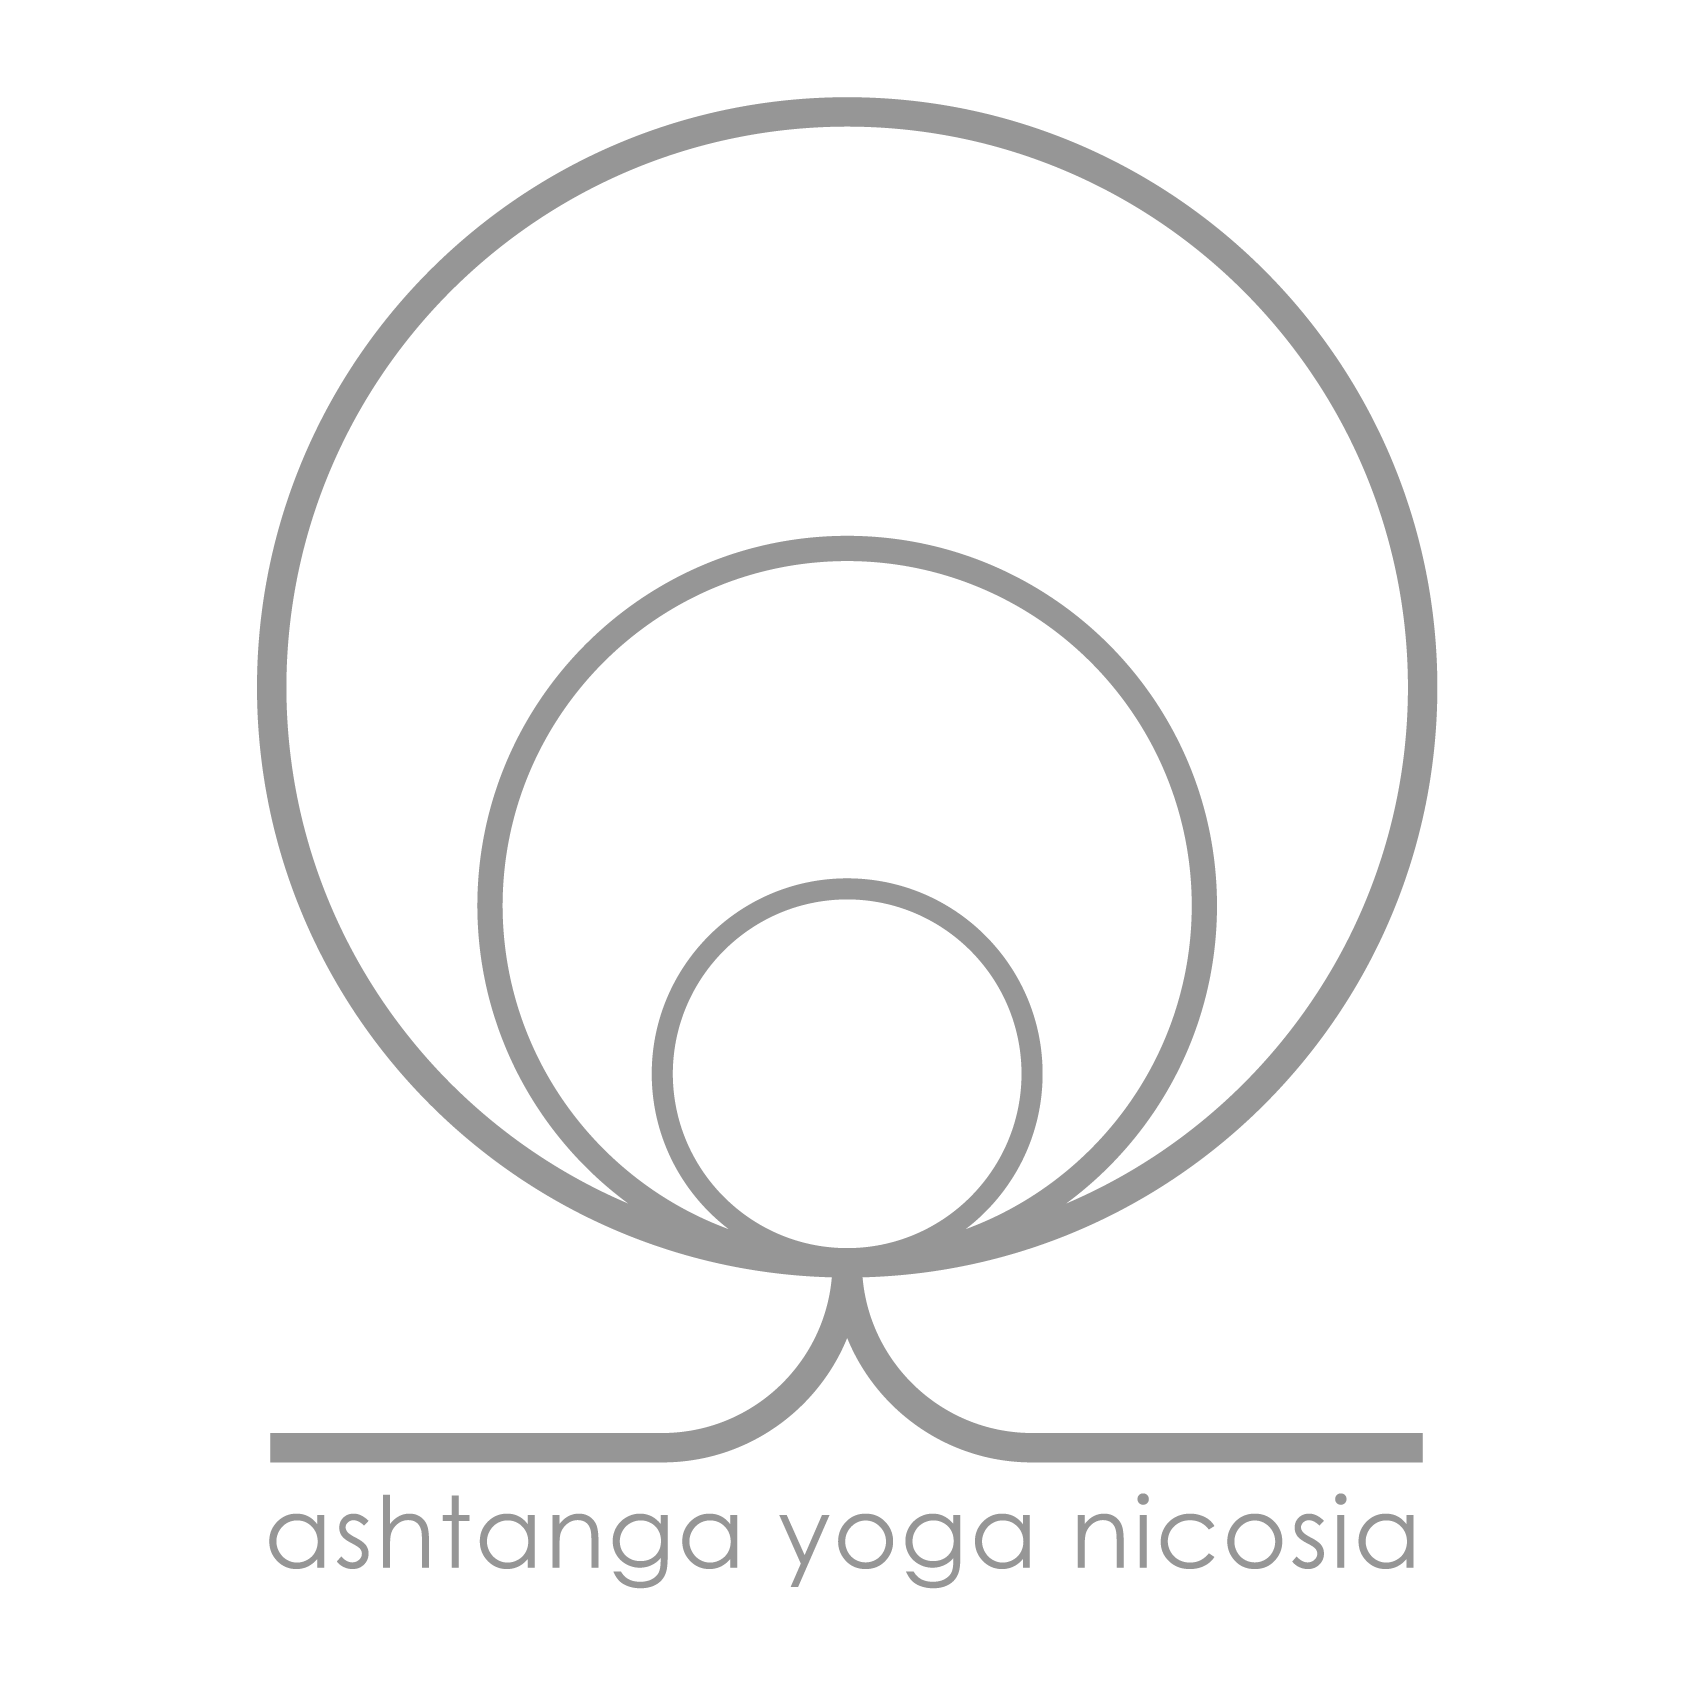 ashtanga yoga nicosia